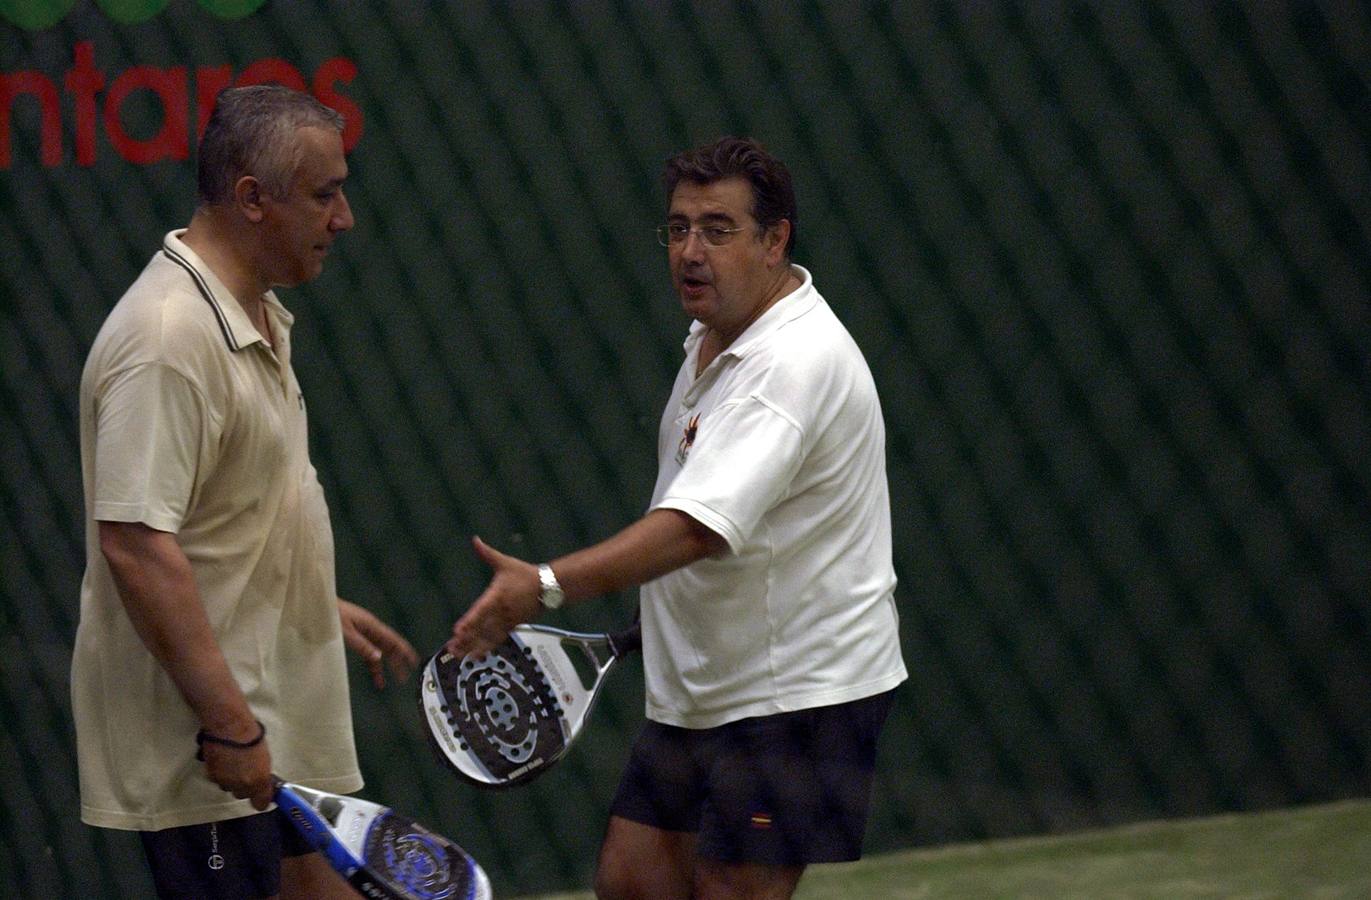 Los populares Javier Arenas y Juan Ignacio Zoido, en un partido de squash en julio de 2004